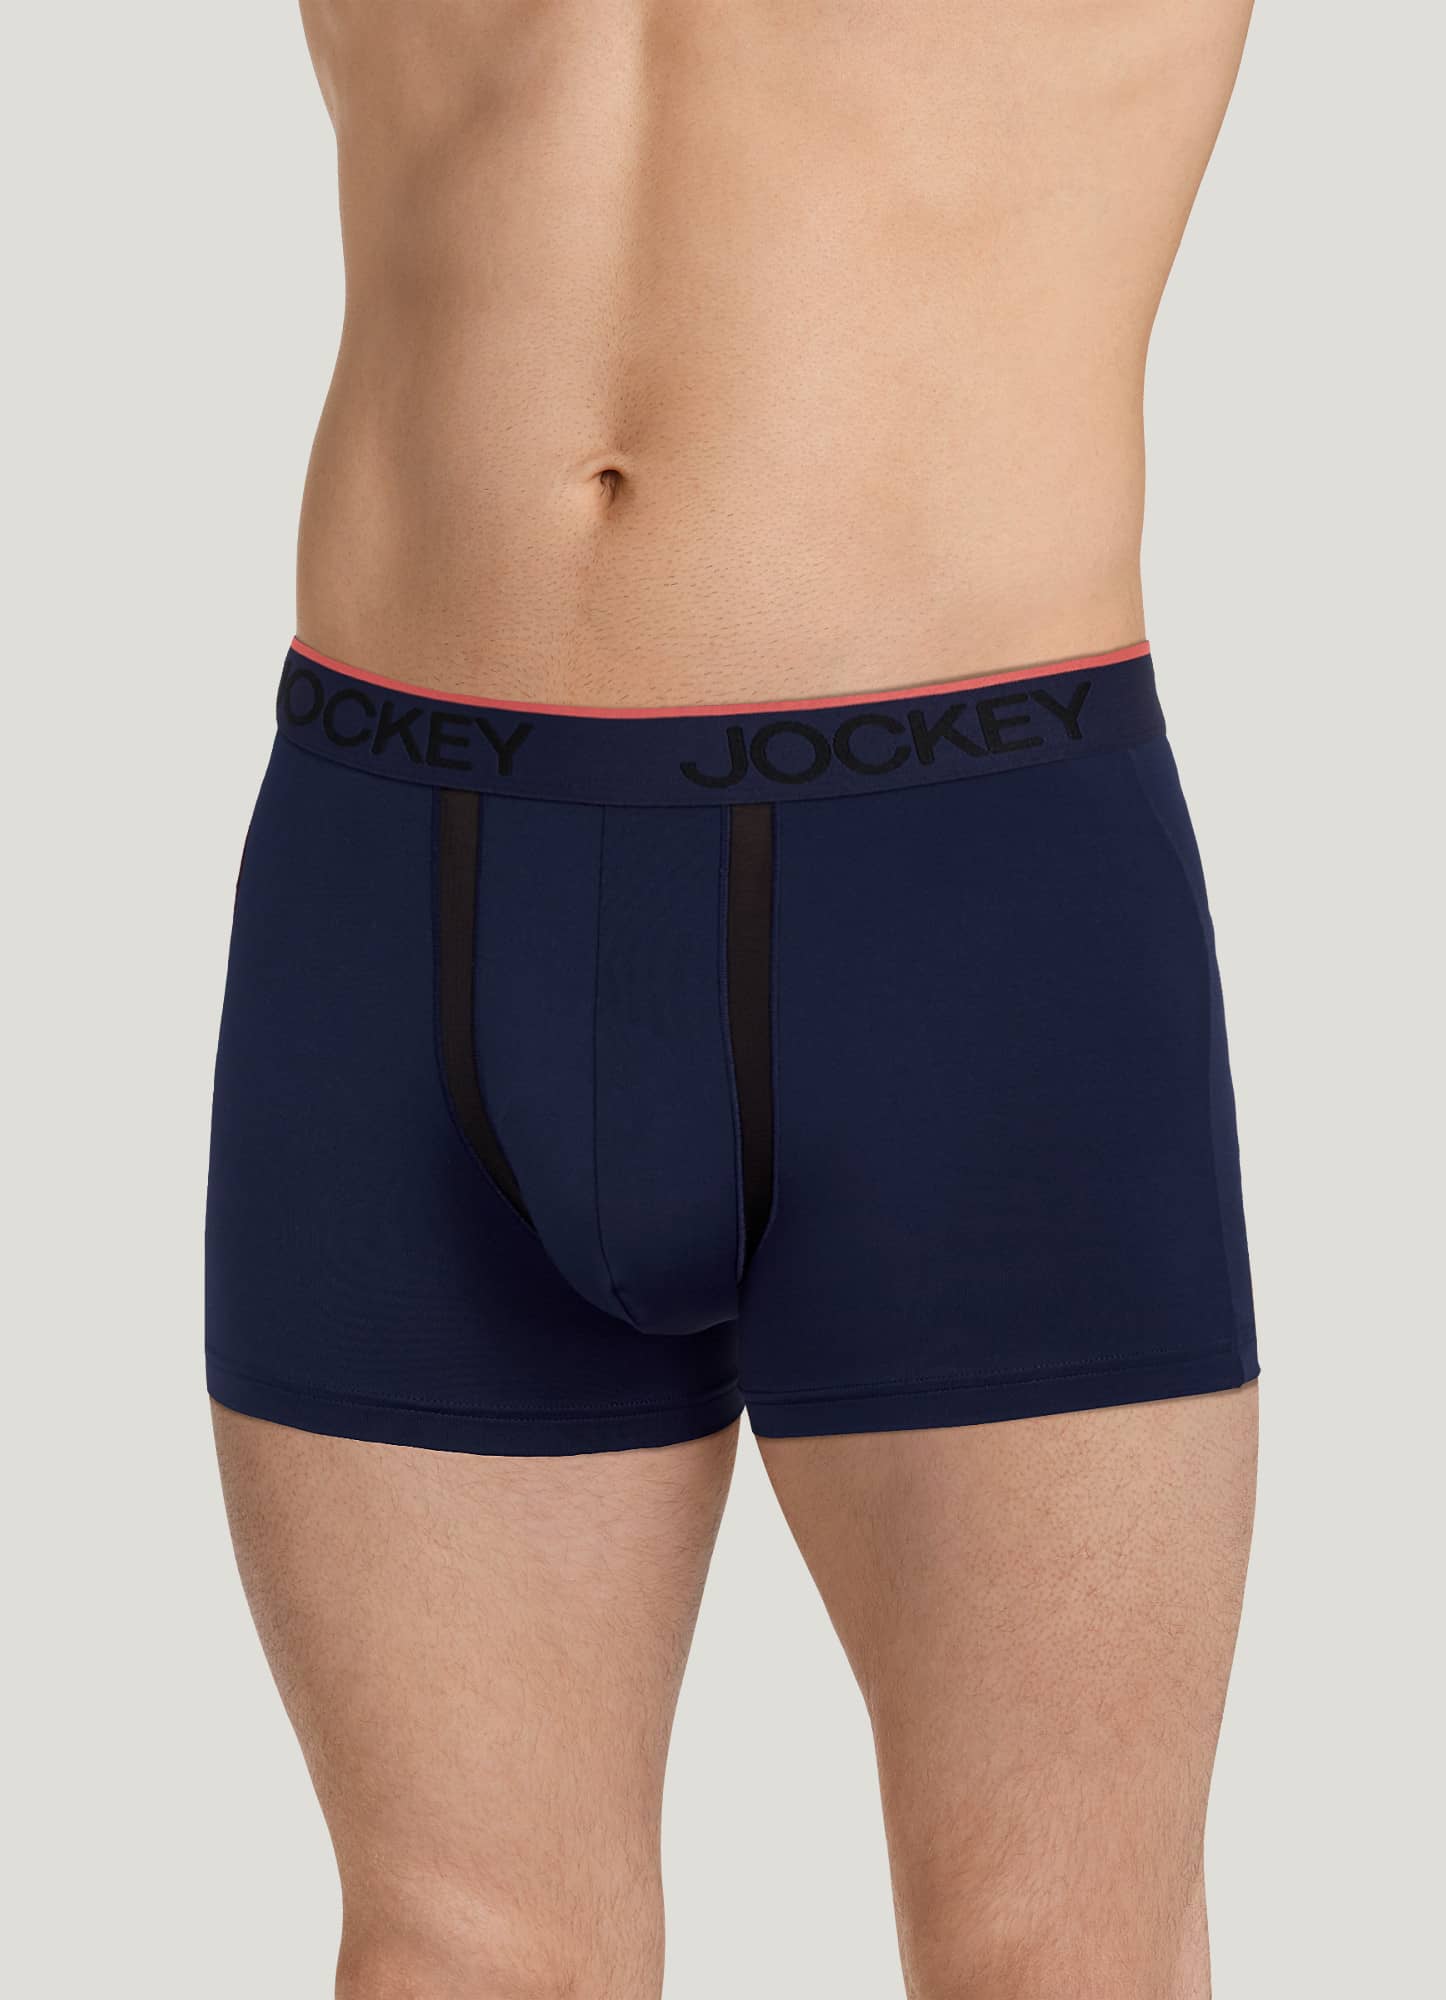 Jockey Men's Underwear Chafe Proof Pouch Microfiber 3 Trunk, Black, L